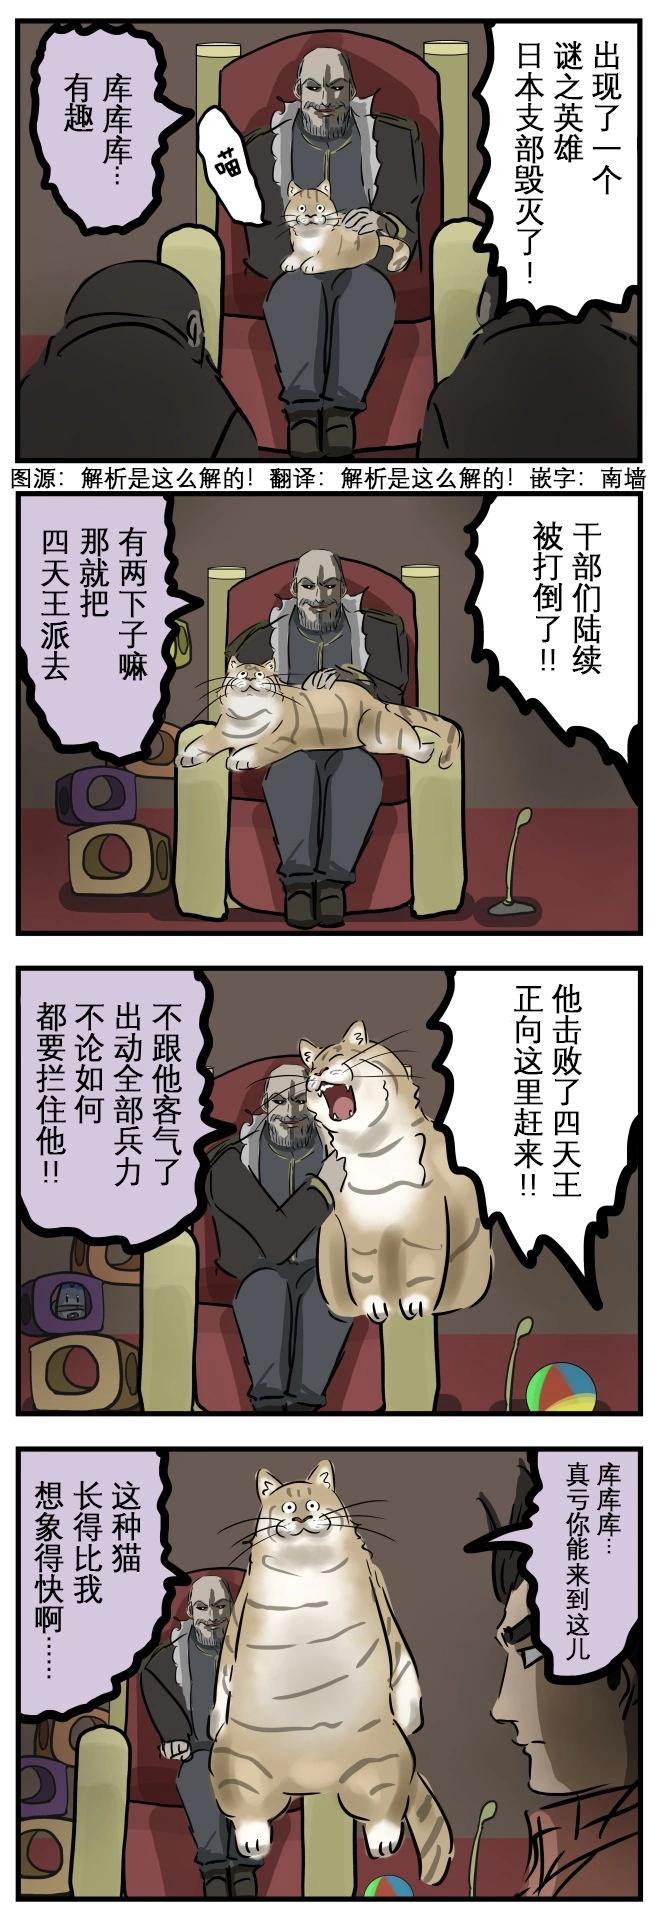 カコミスル老师四格合集 - 敌方boss的猫 - 1